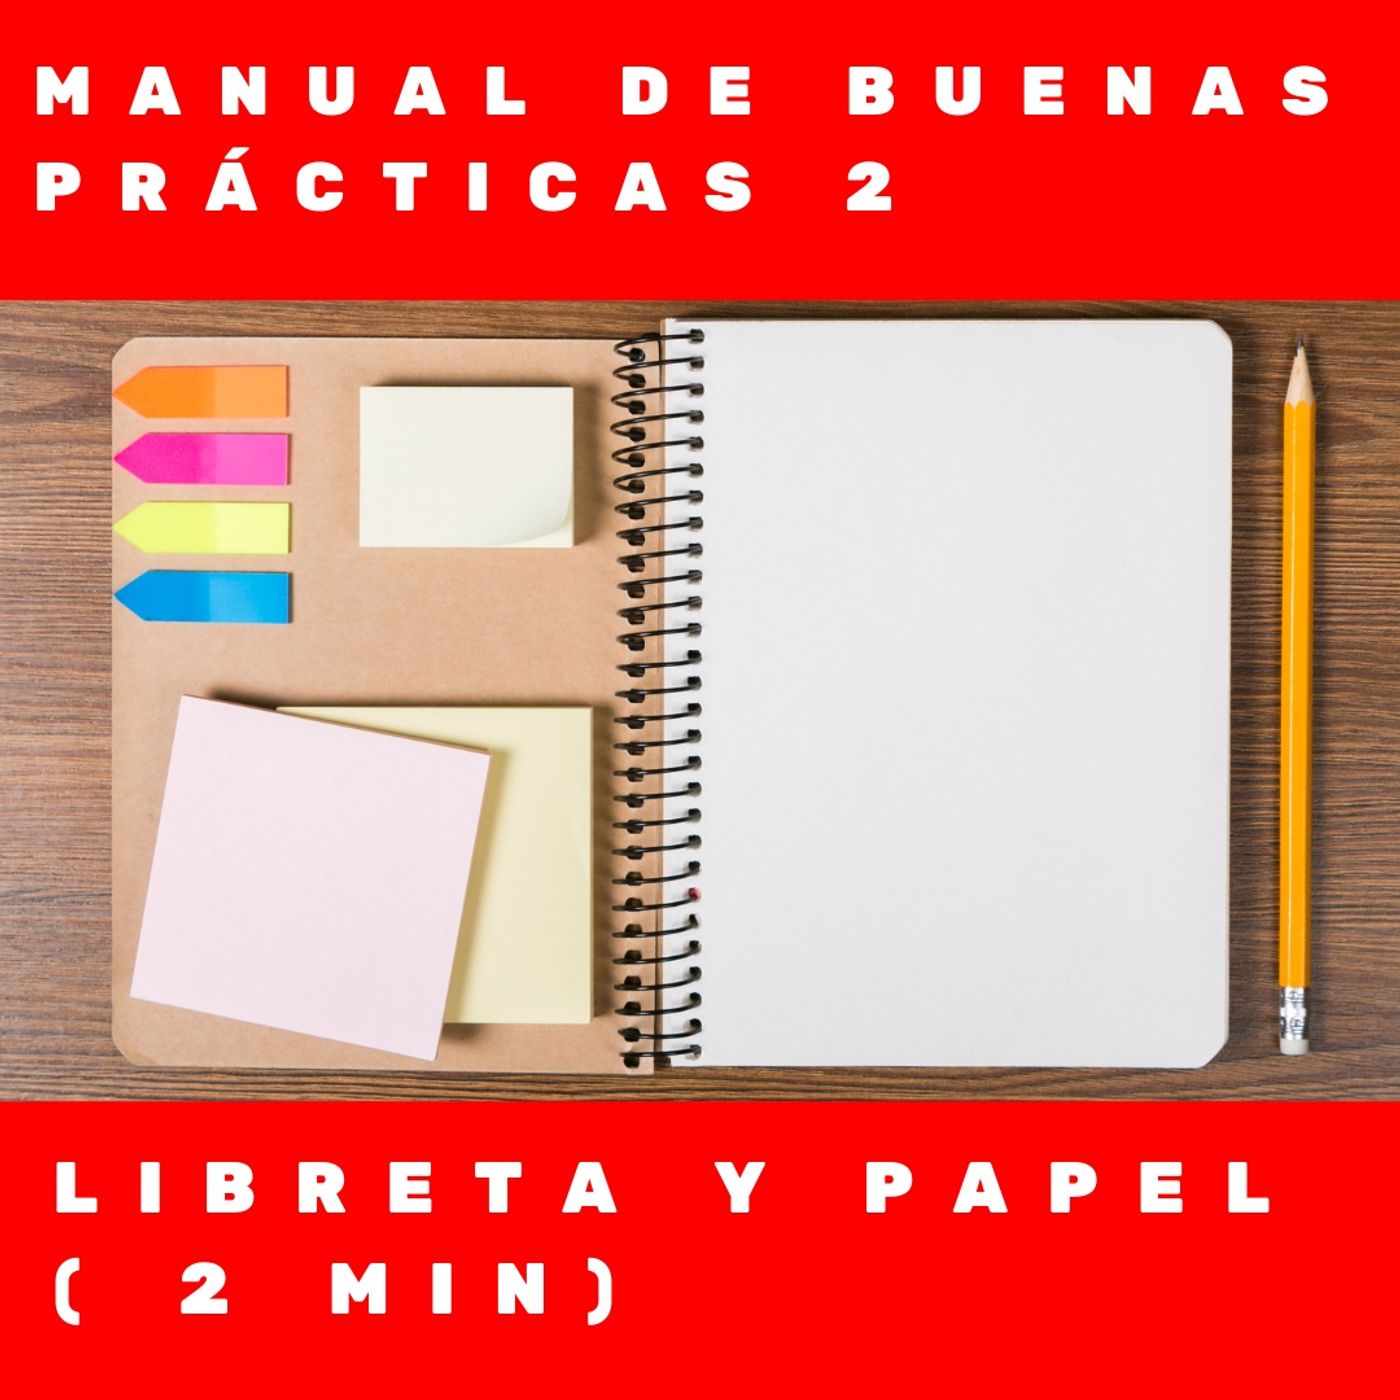 Manual de buenas prácticas 2- Libreta y papel